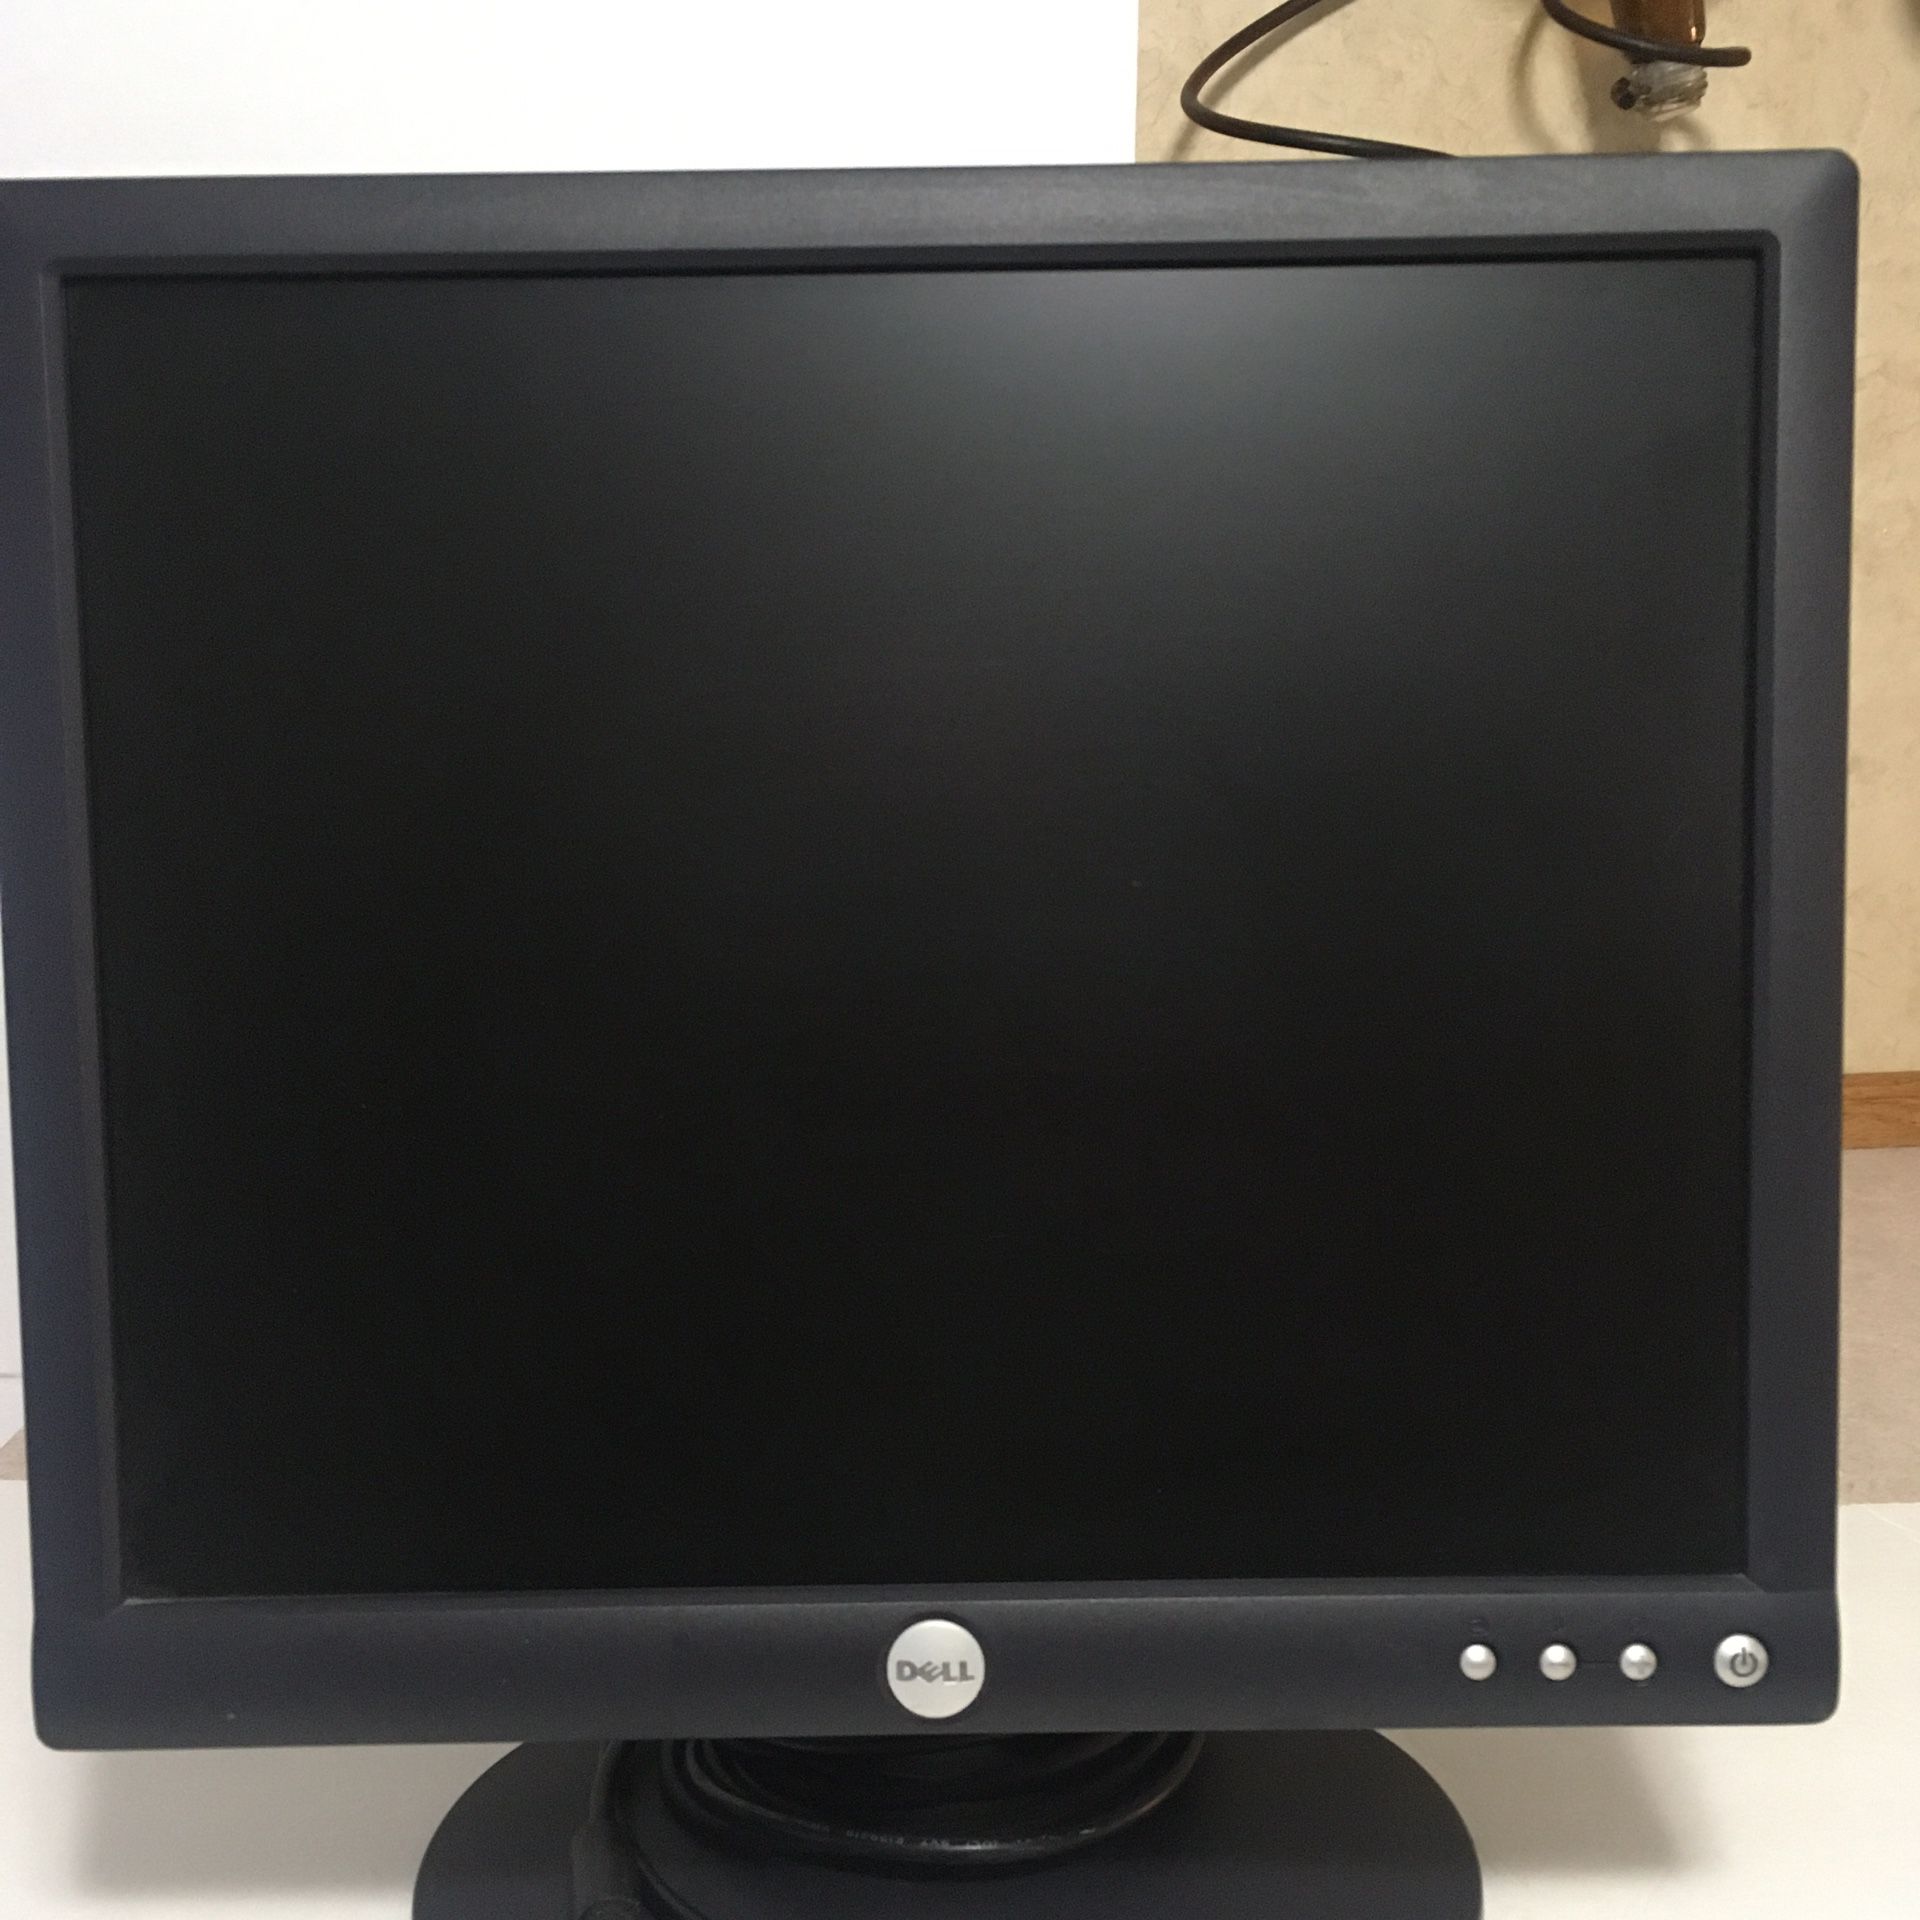 17 inch Dell computer monitor